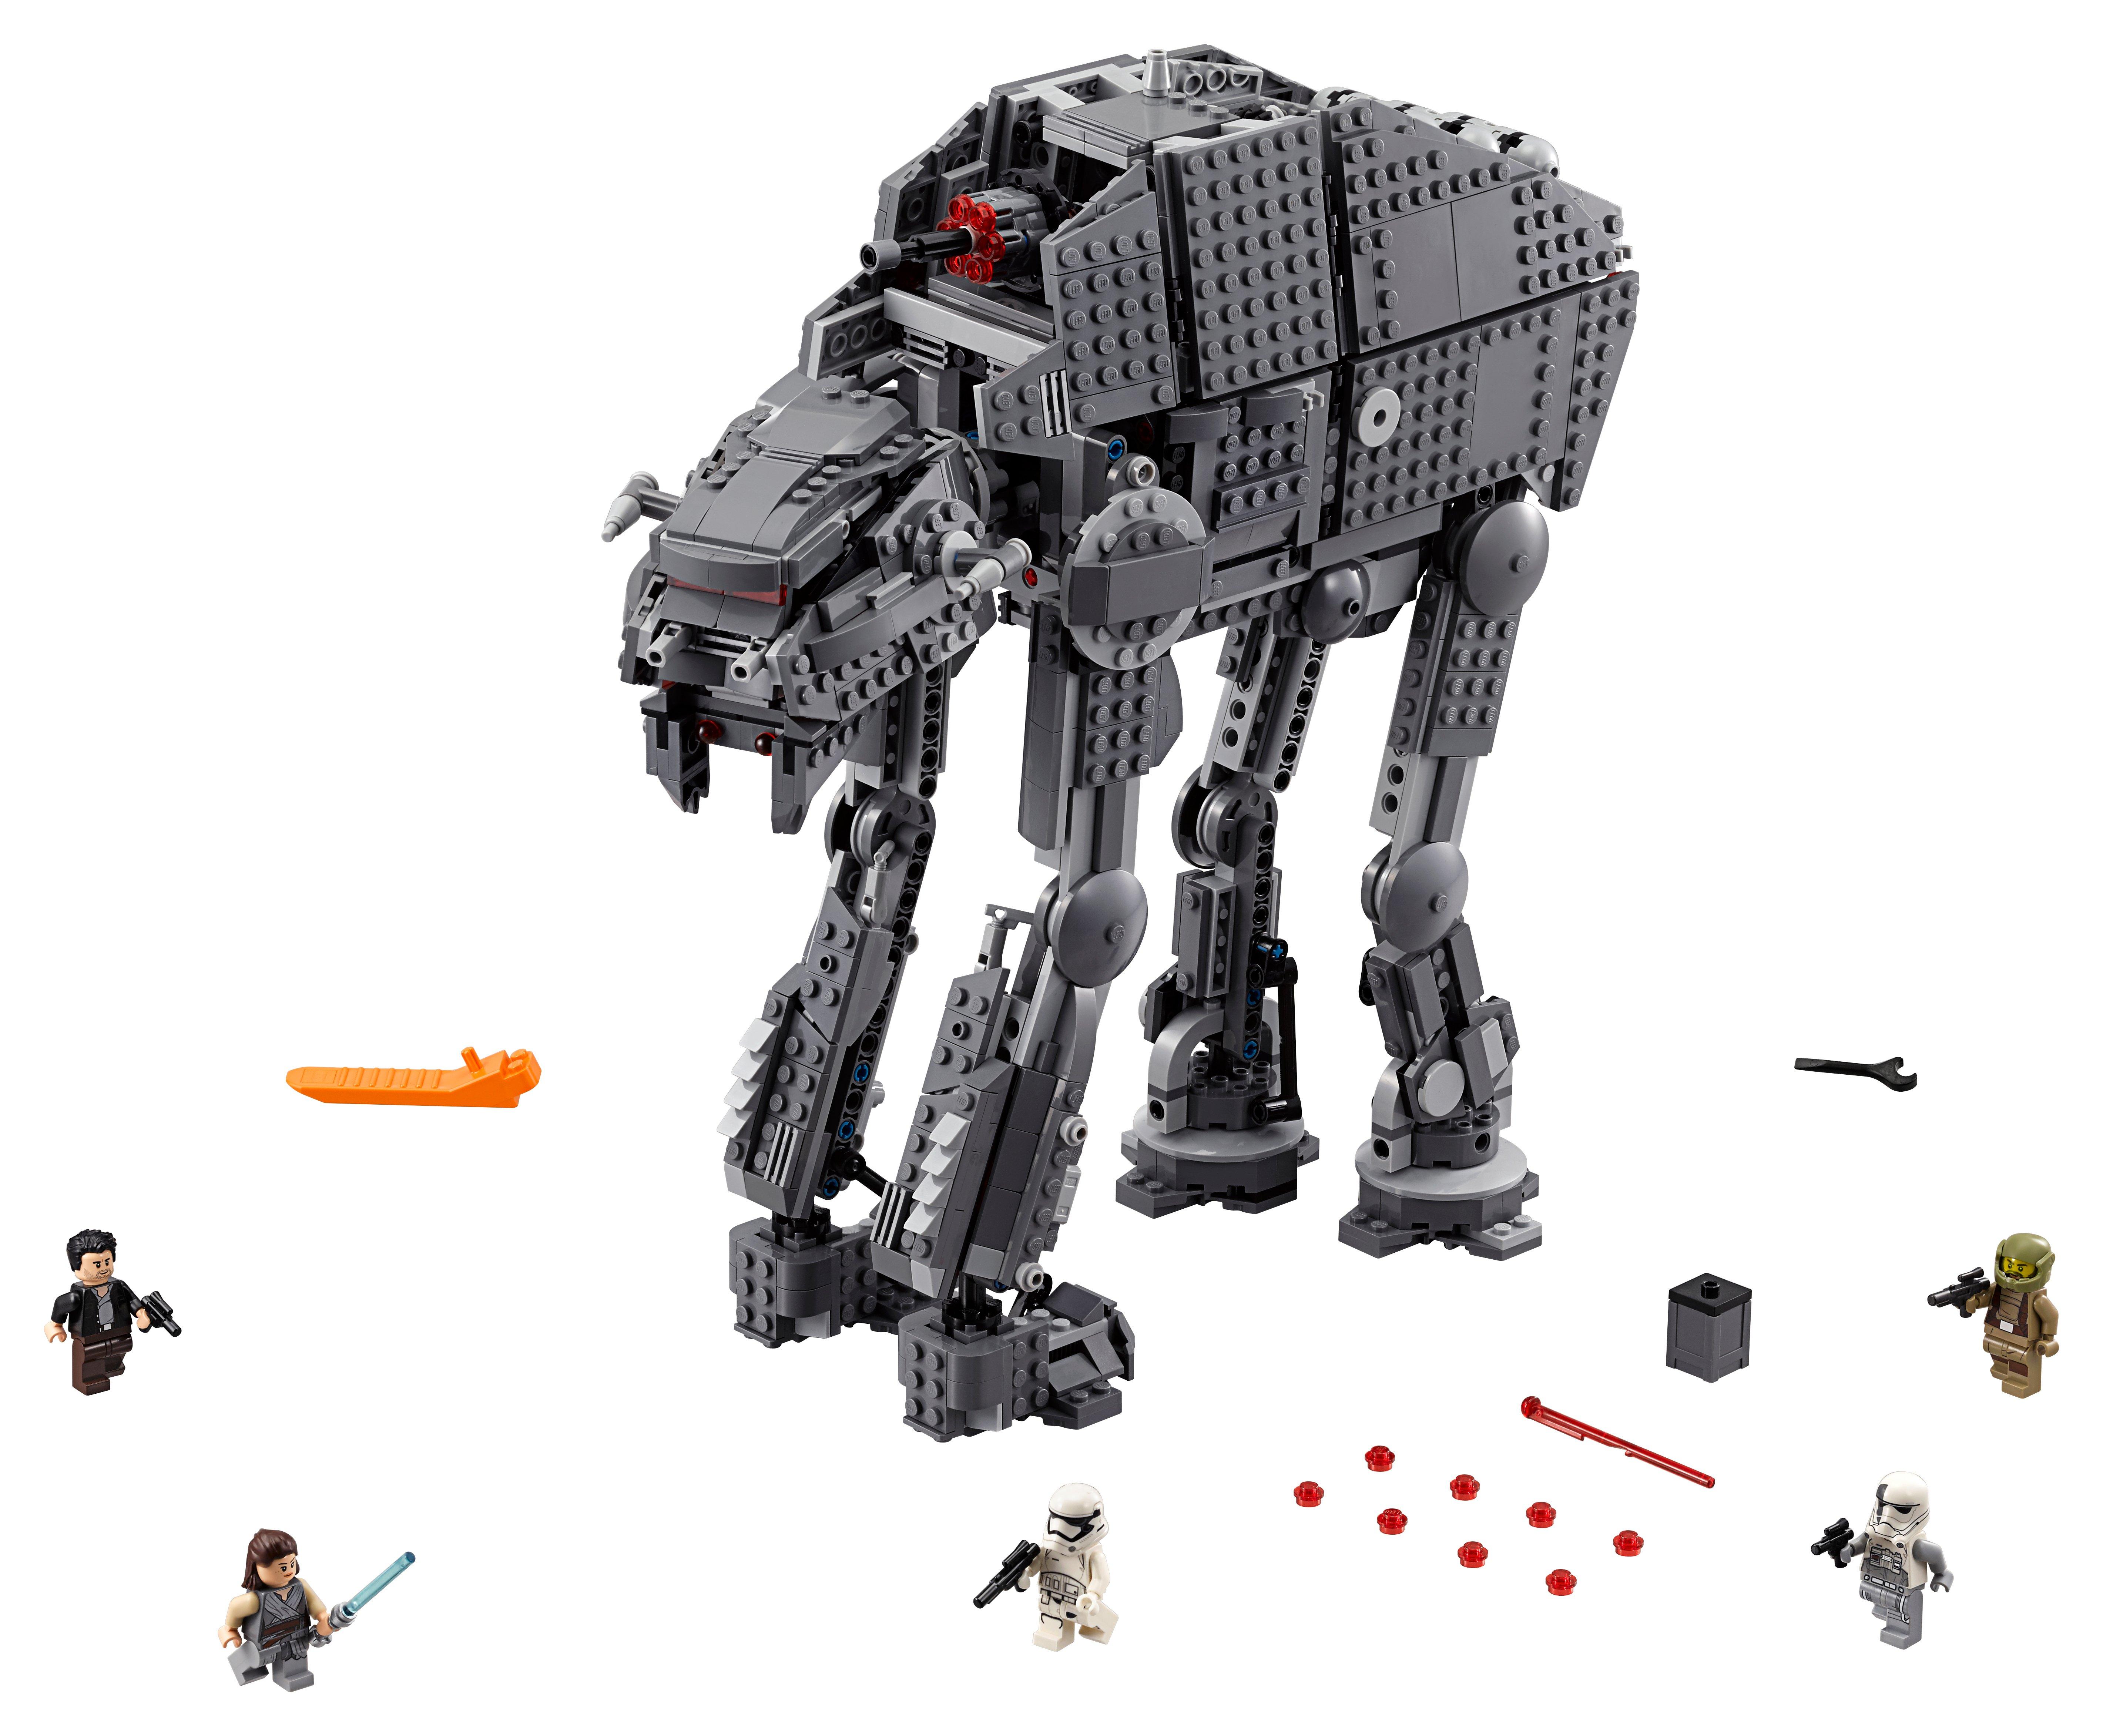 LEGO®  75189 First Order Heavy Assault Walker™ 